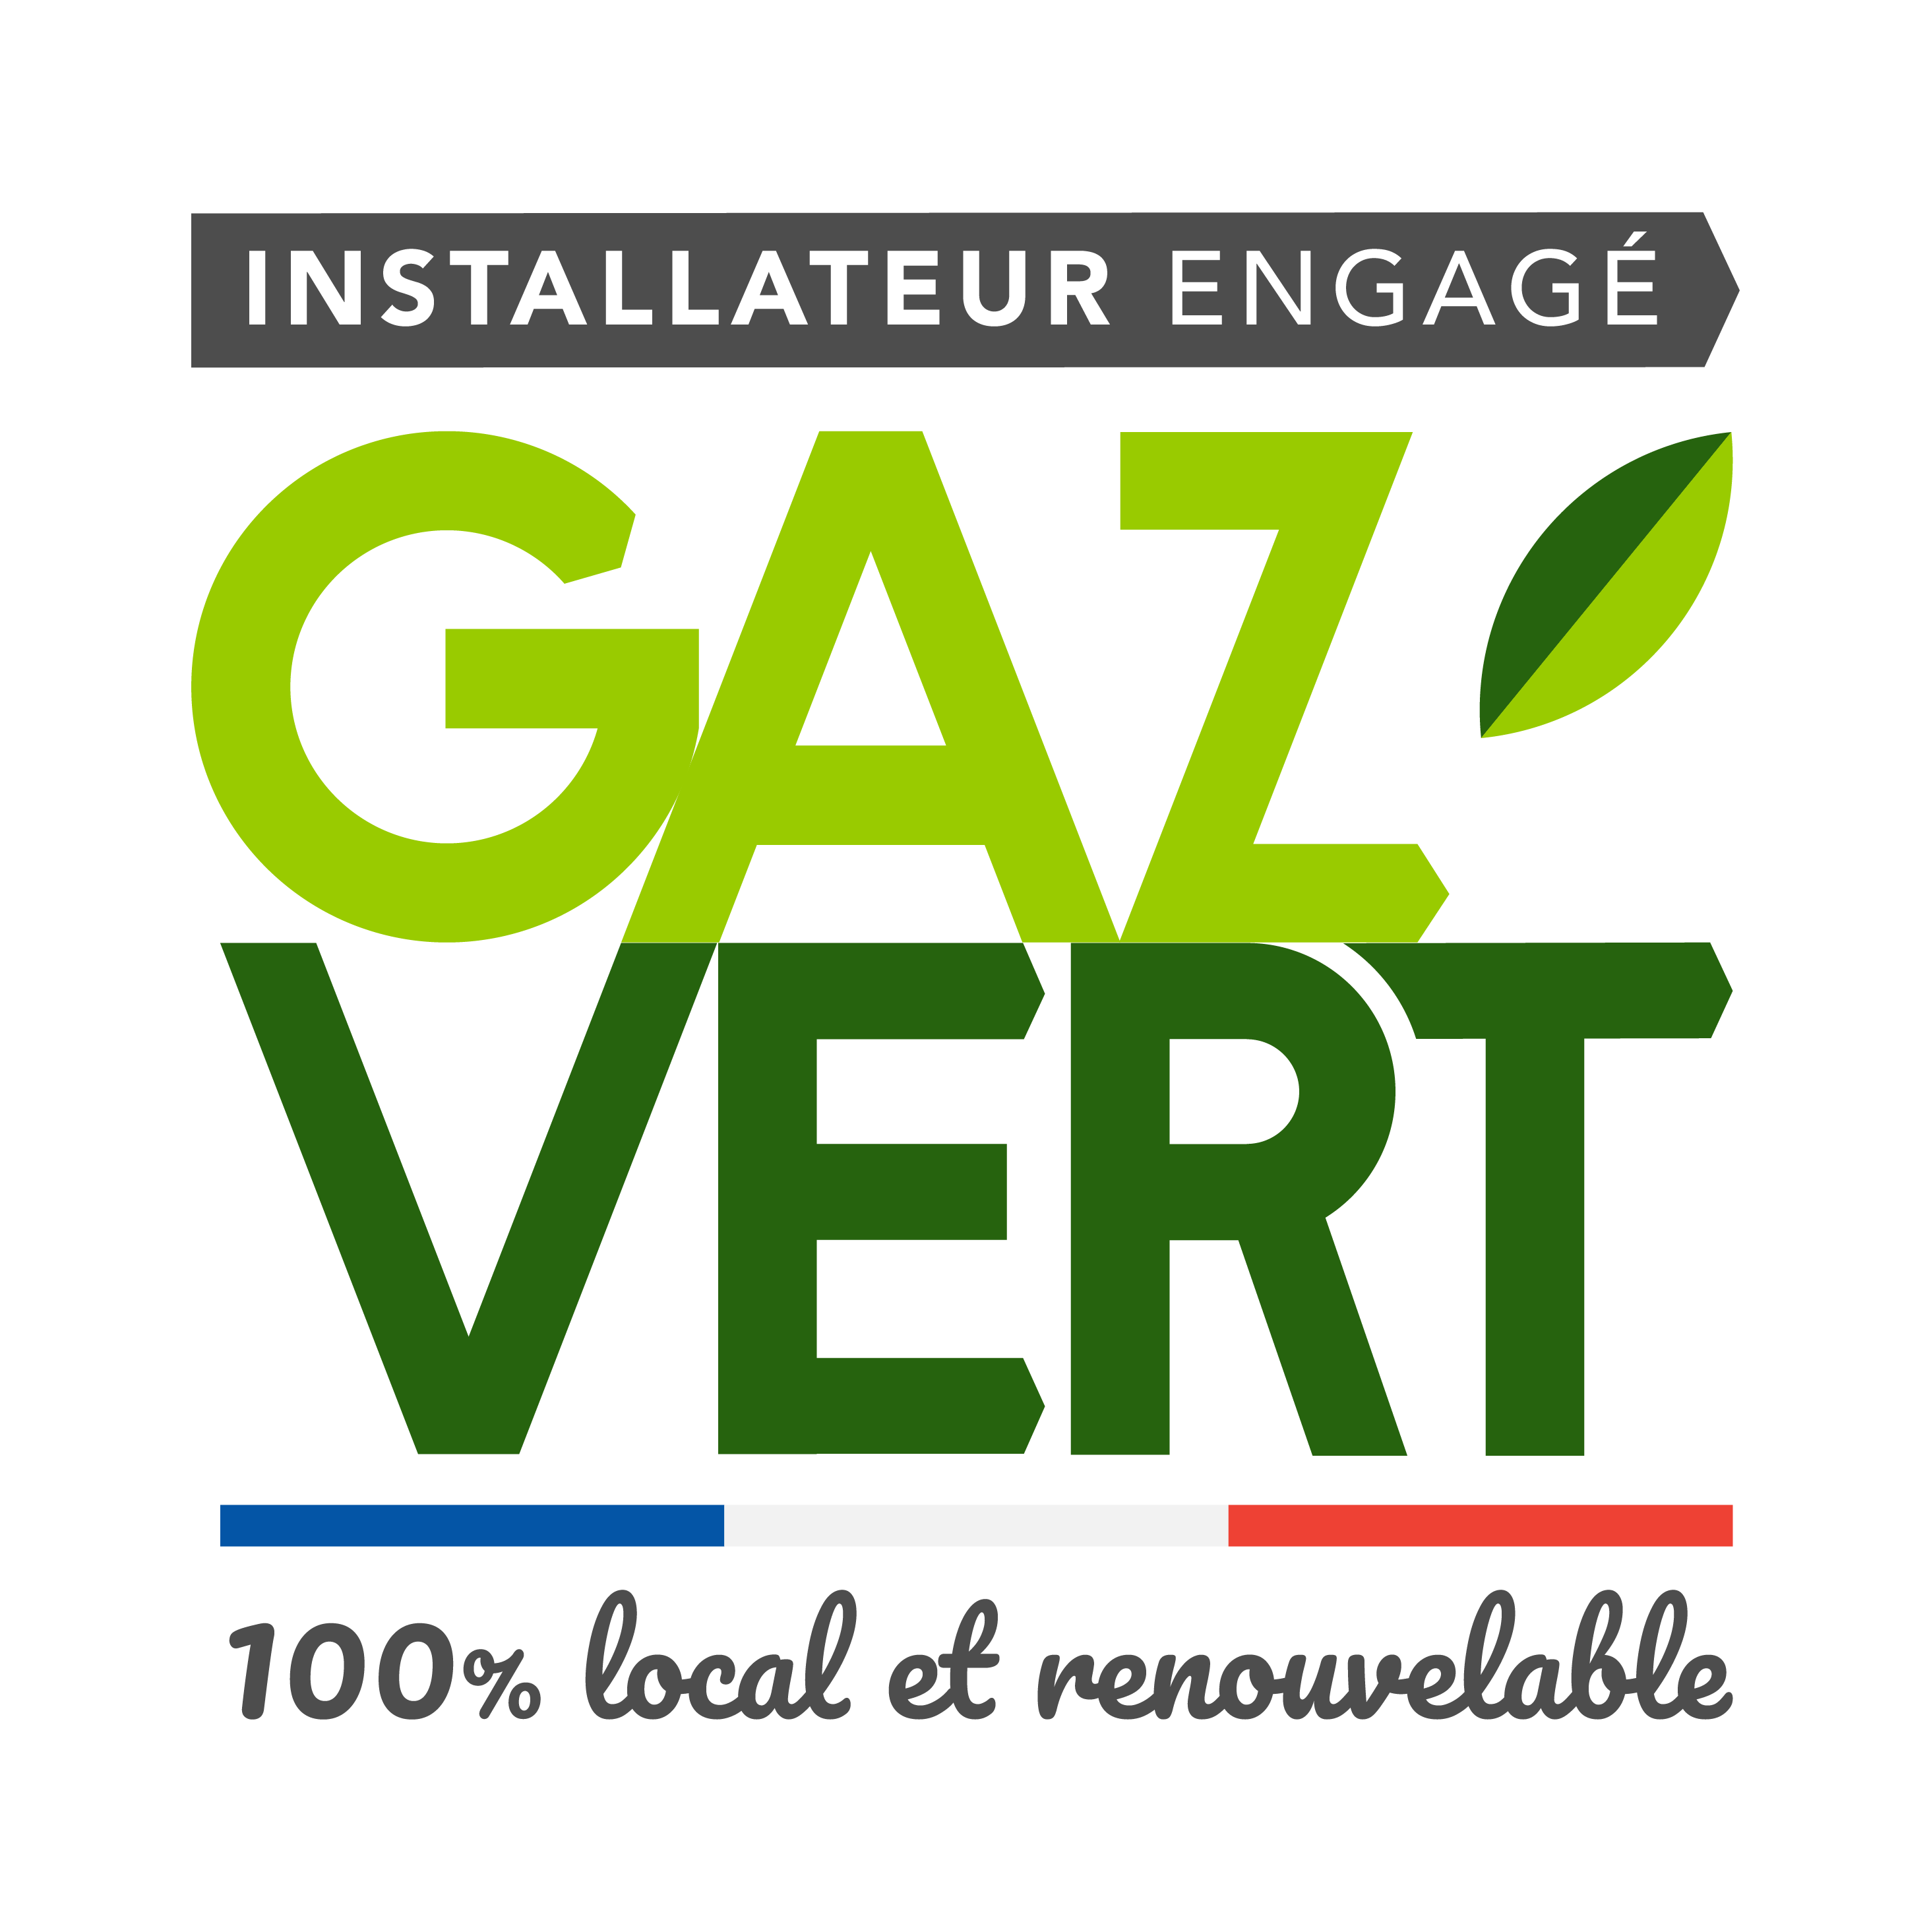 GRDF_LabelGazVert-installateur